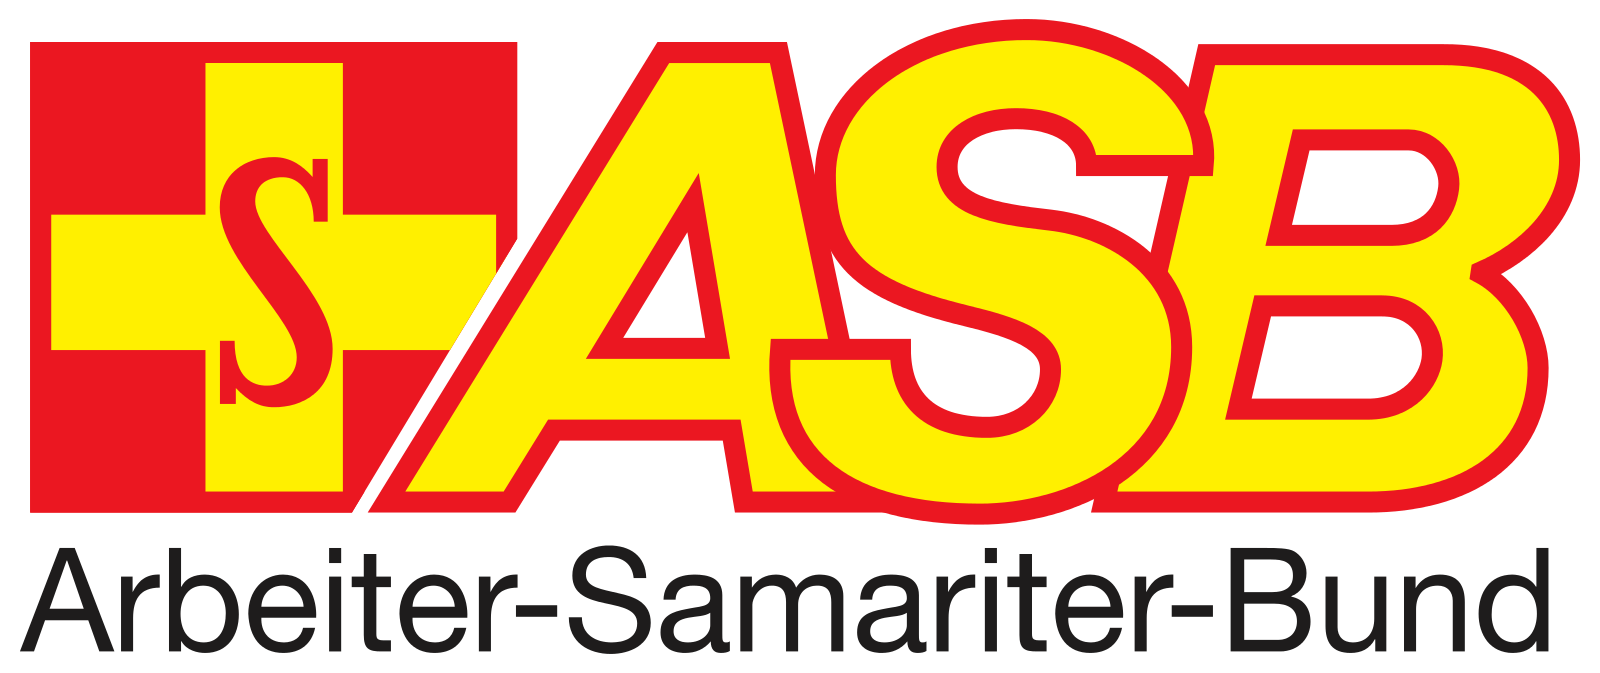 Arbeiter Samariter Bund Deutschland logo svg